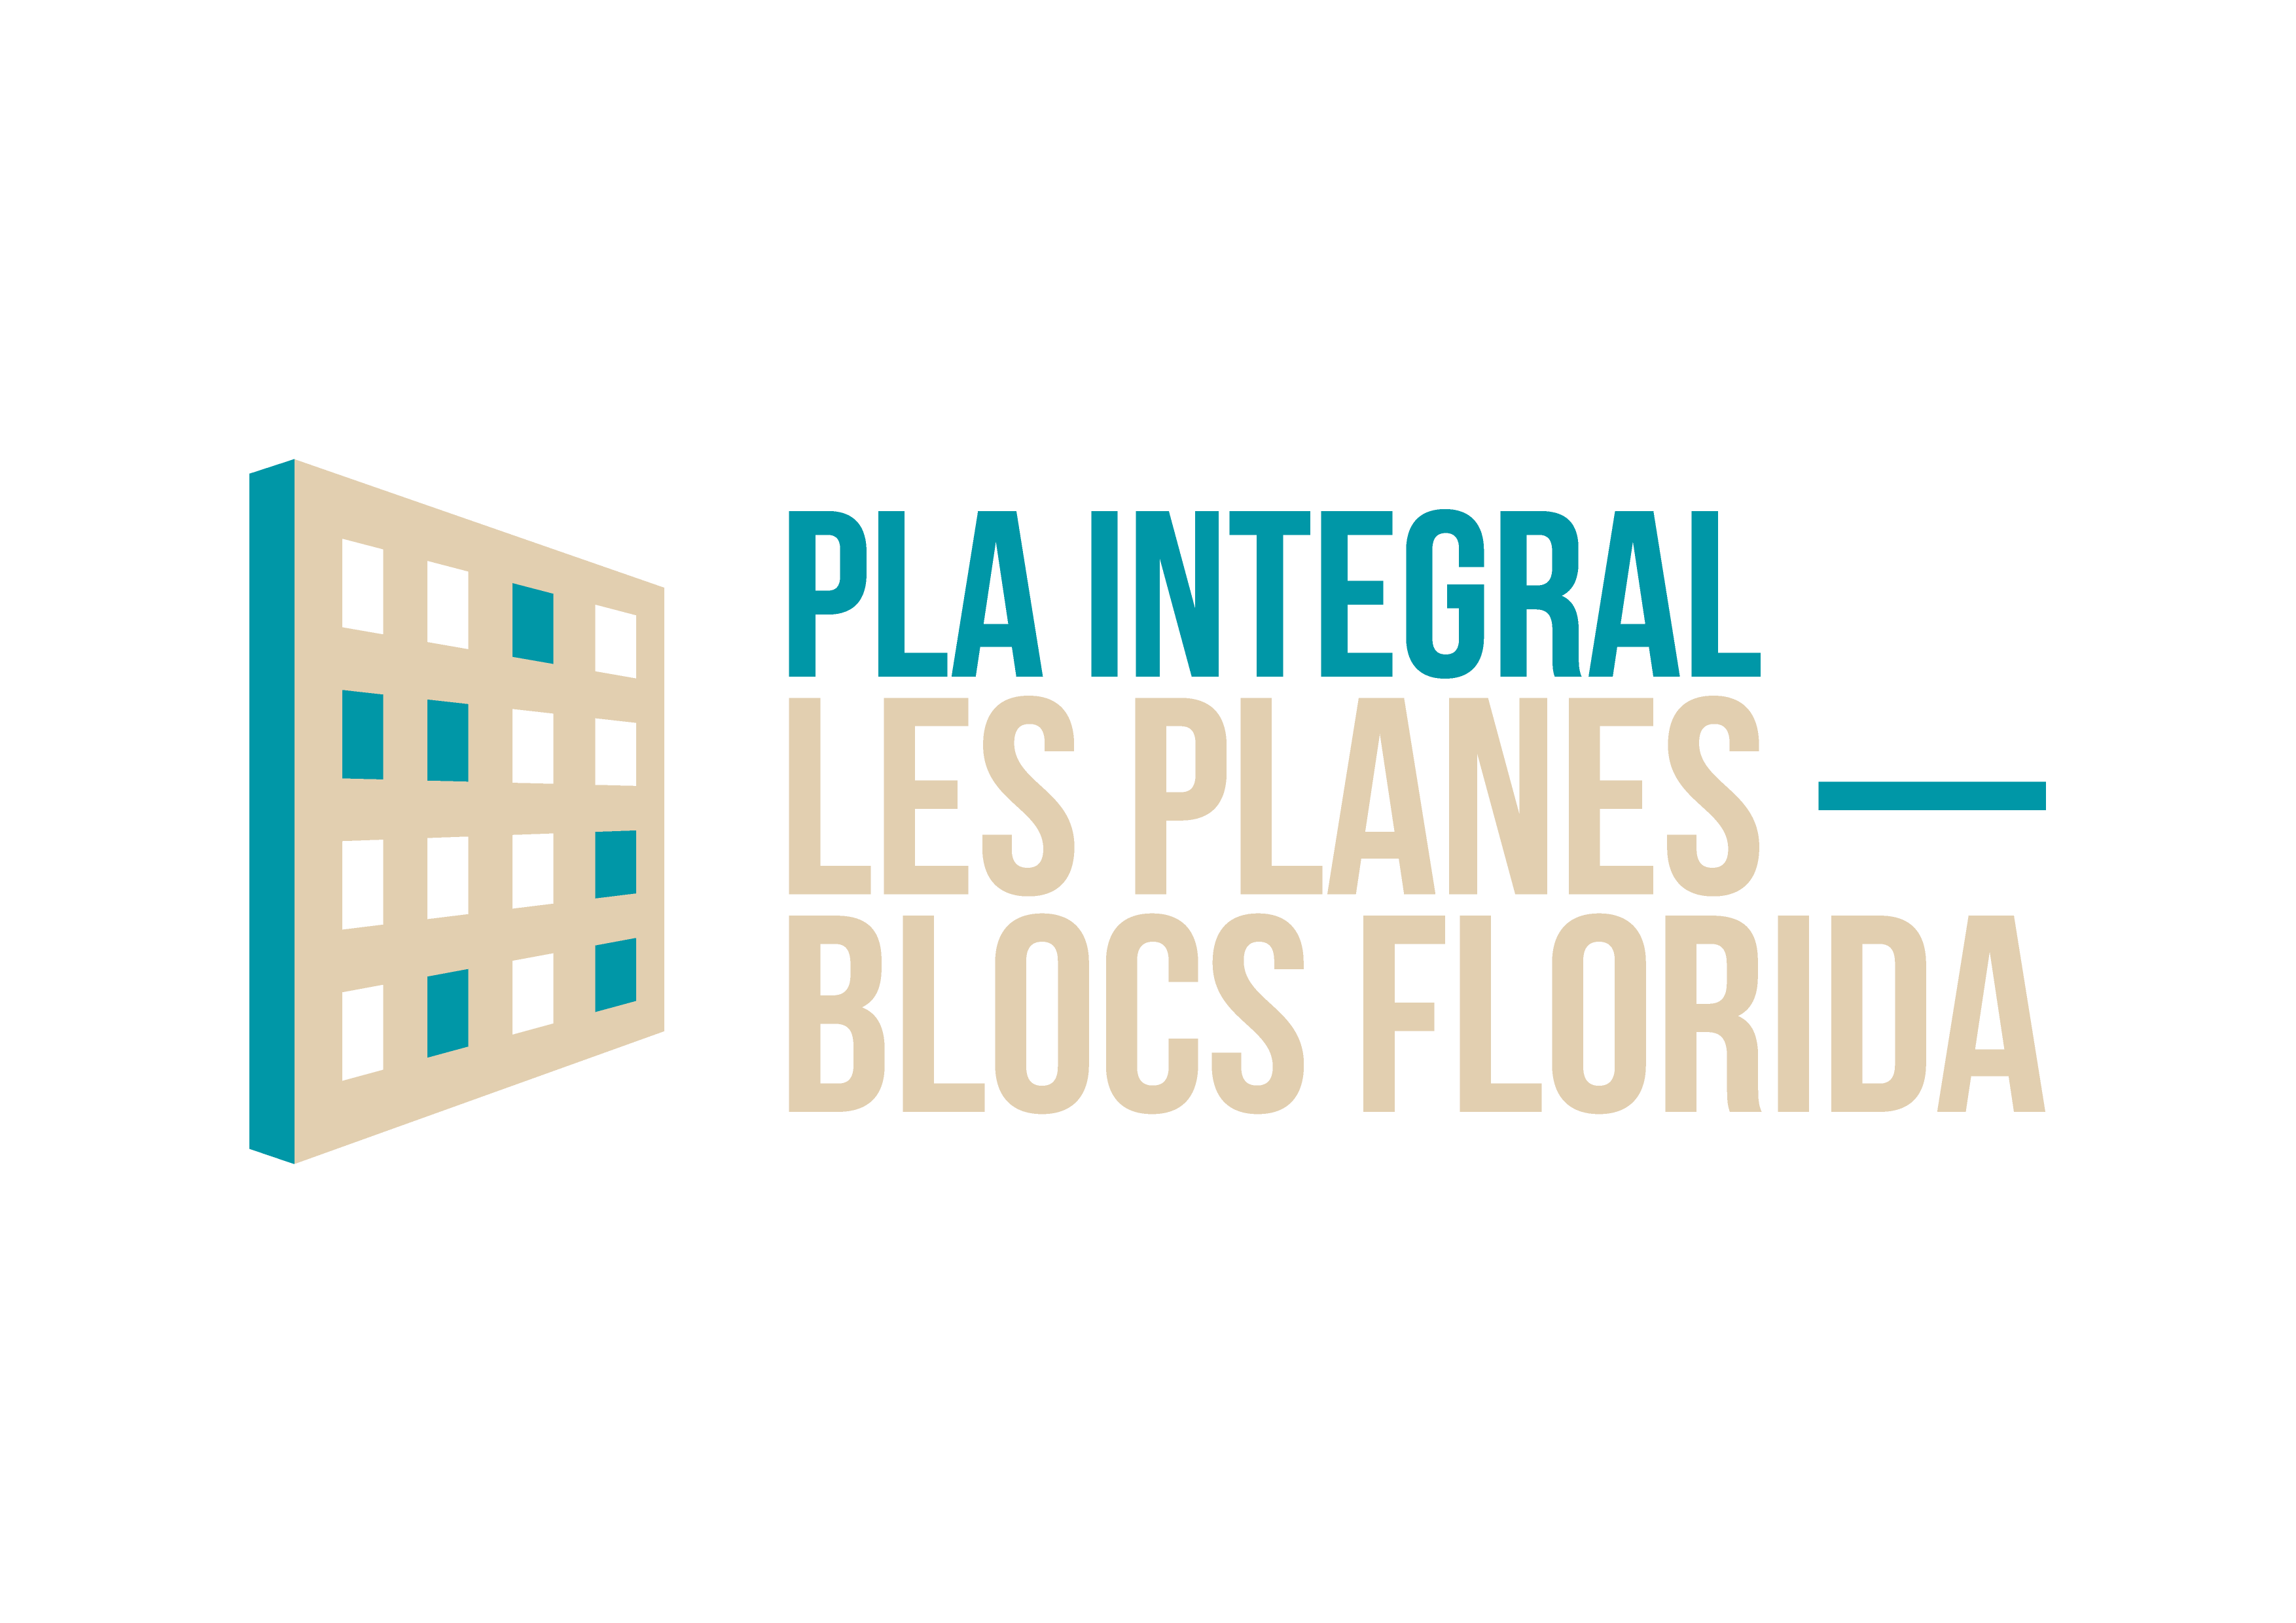 Plan de Regeneración Urbana Integral Les Planes - Blocs Florida